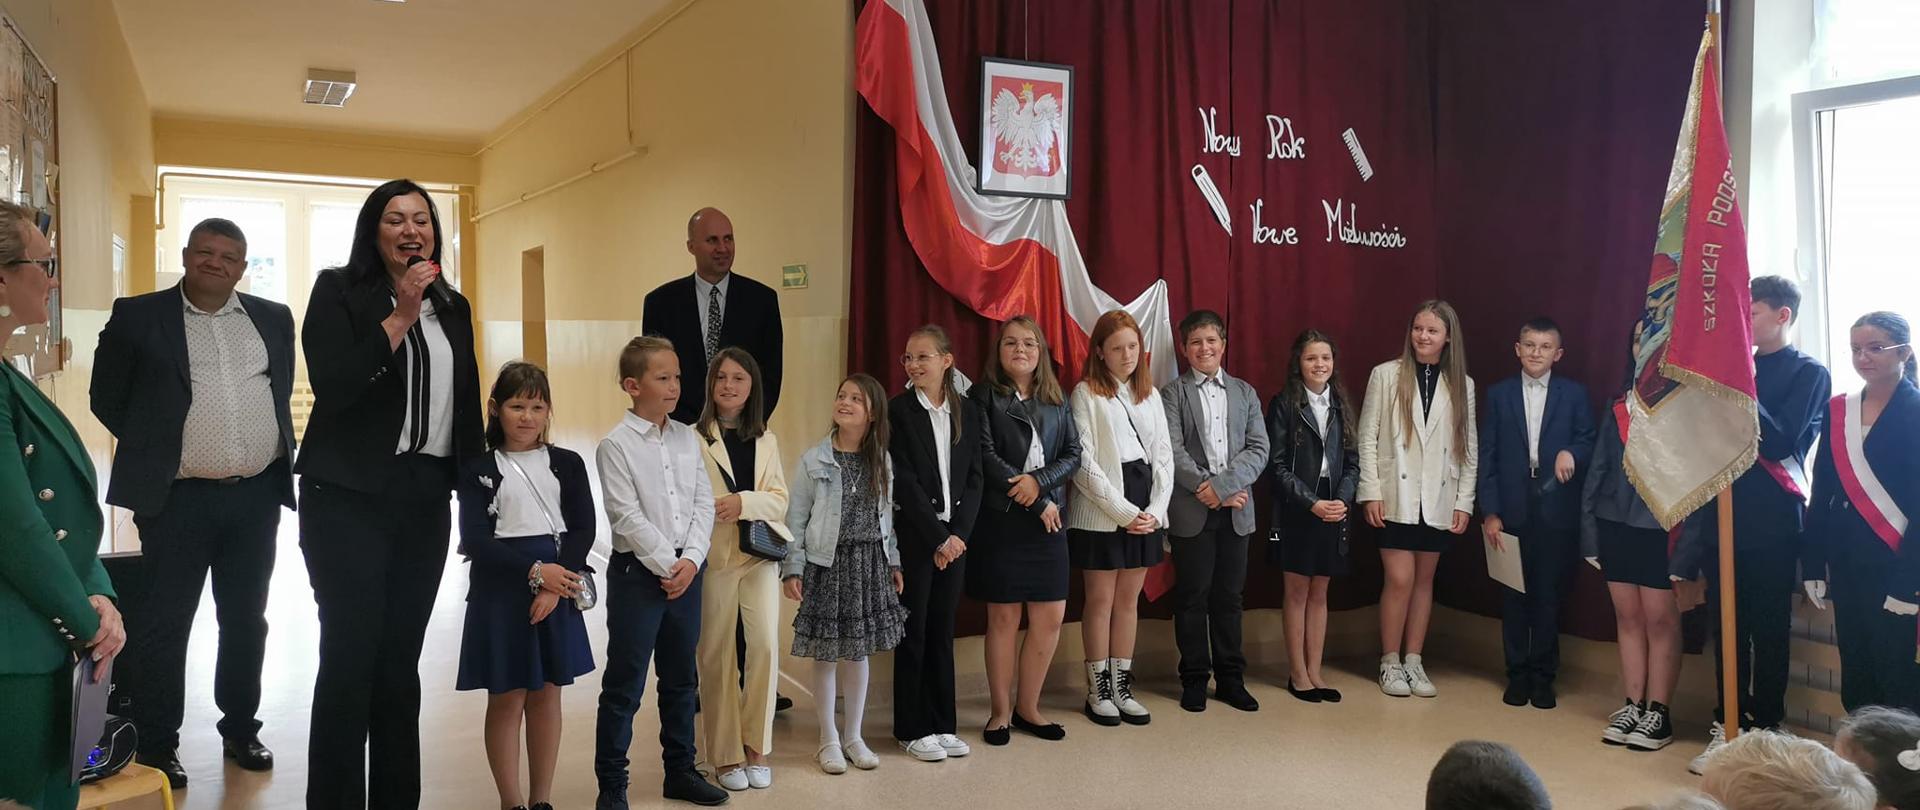 Rozpoczęcie roku szkolnego w Szkole Podstawowej w Maciejowej, Pani Wójt przemawia, po lewej stronie Pani Dyrektor, na środku uczniowie z występem artystycznym, po prawej poczet sztandarowy szkoły